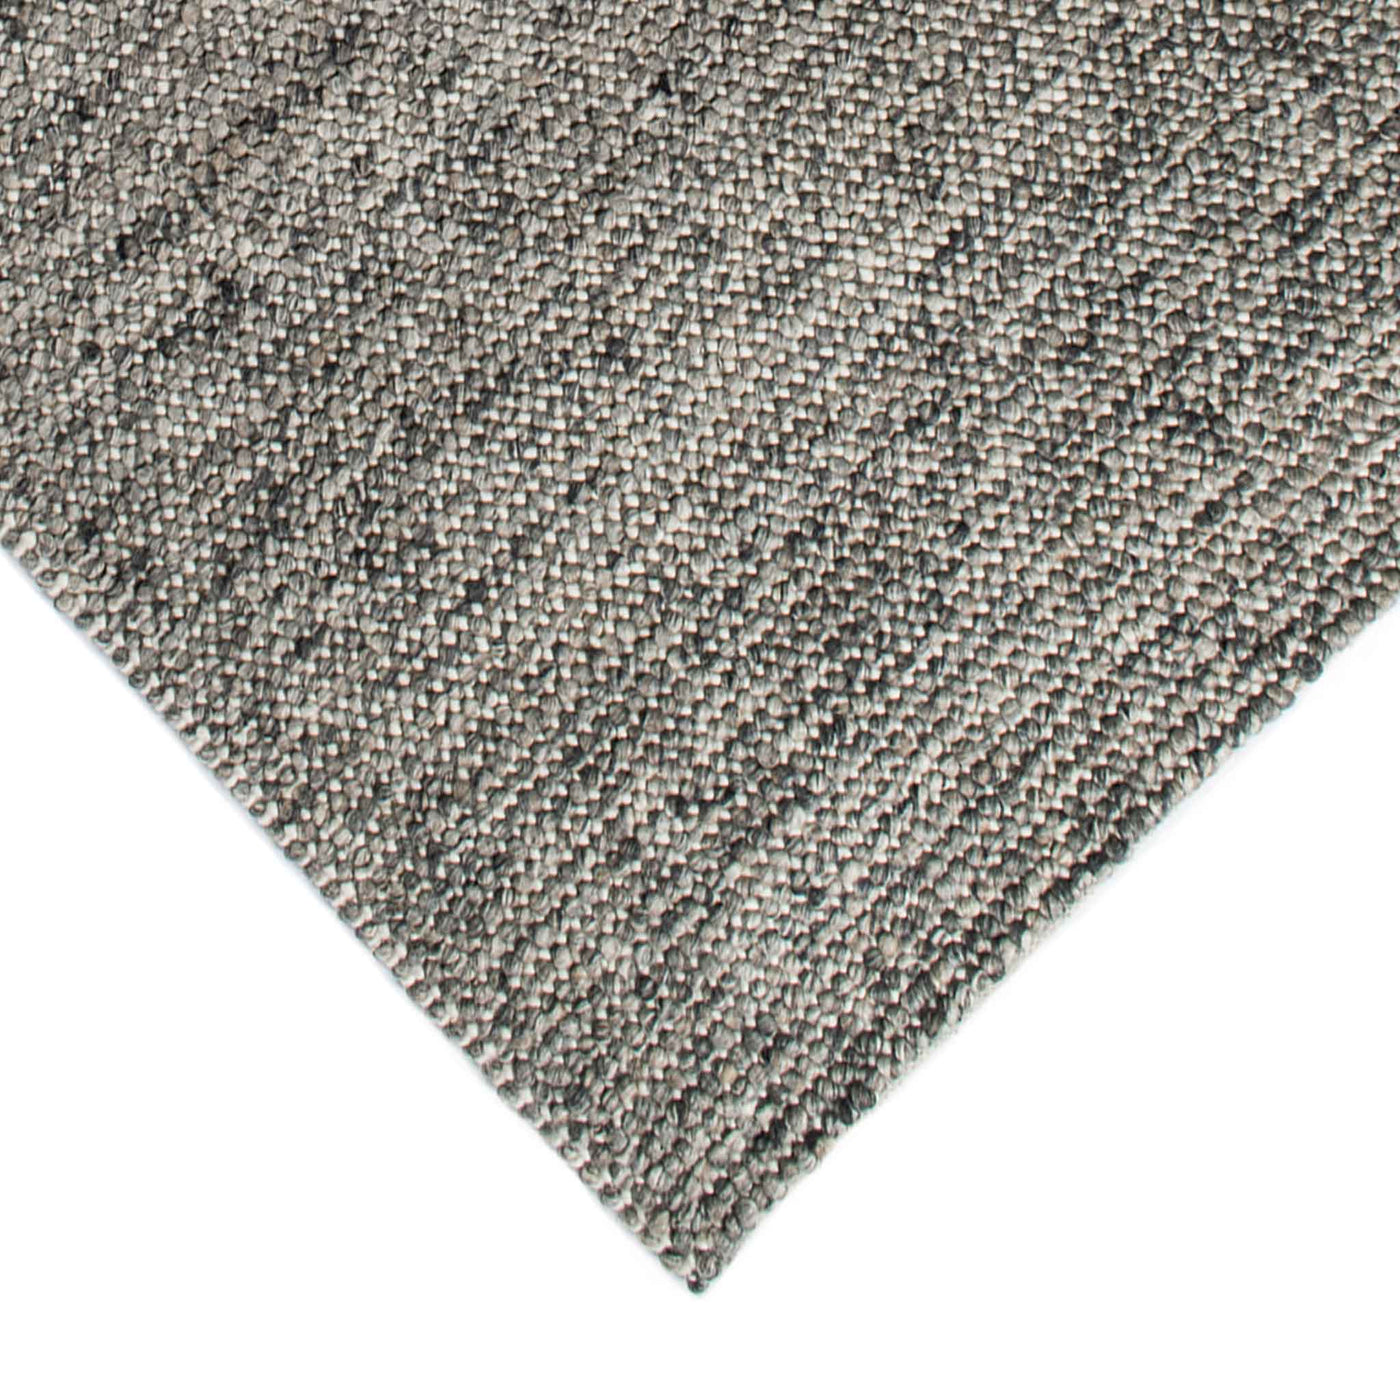 Dublin håndvævet tæppe i meleret grå fra HC Tæpprt